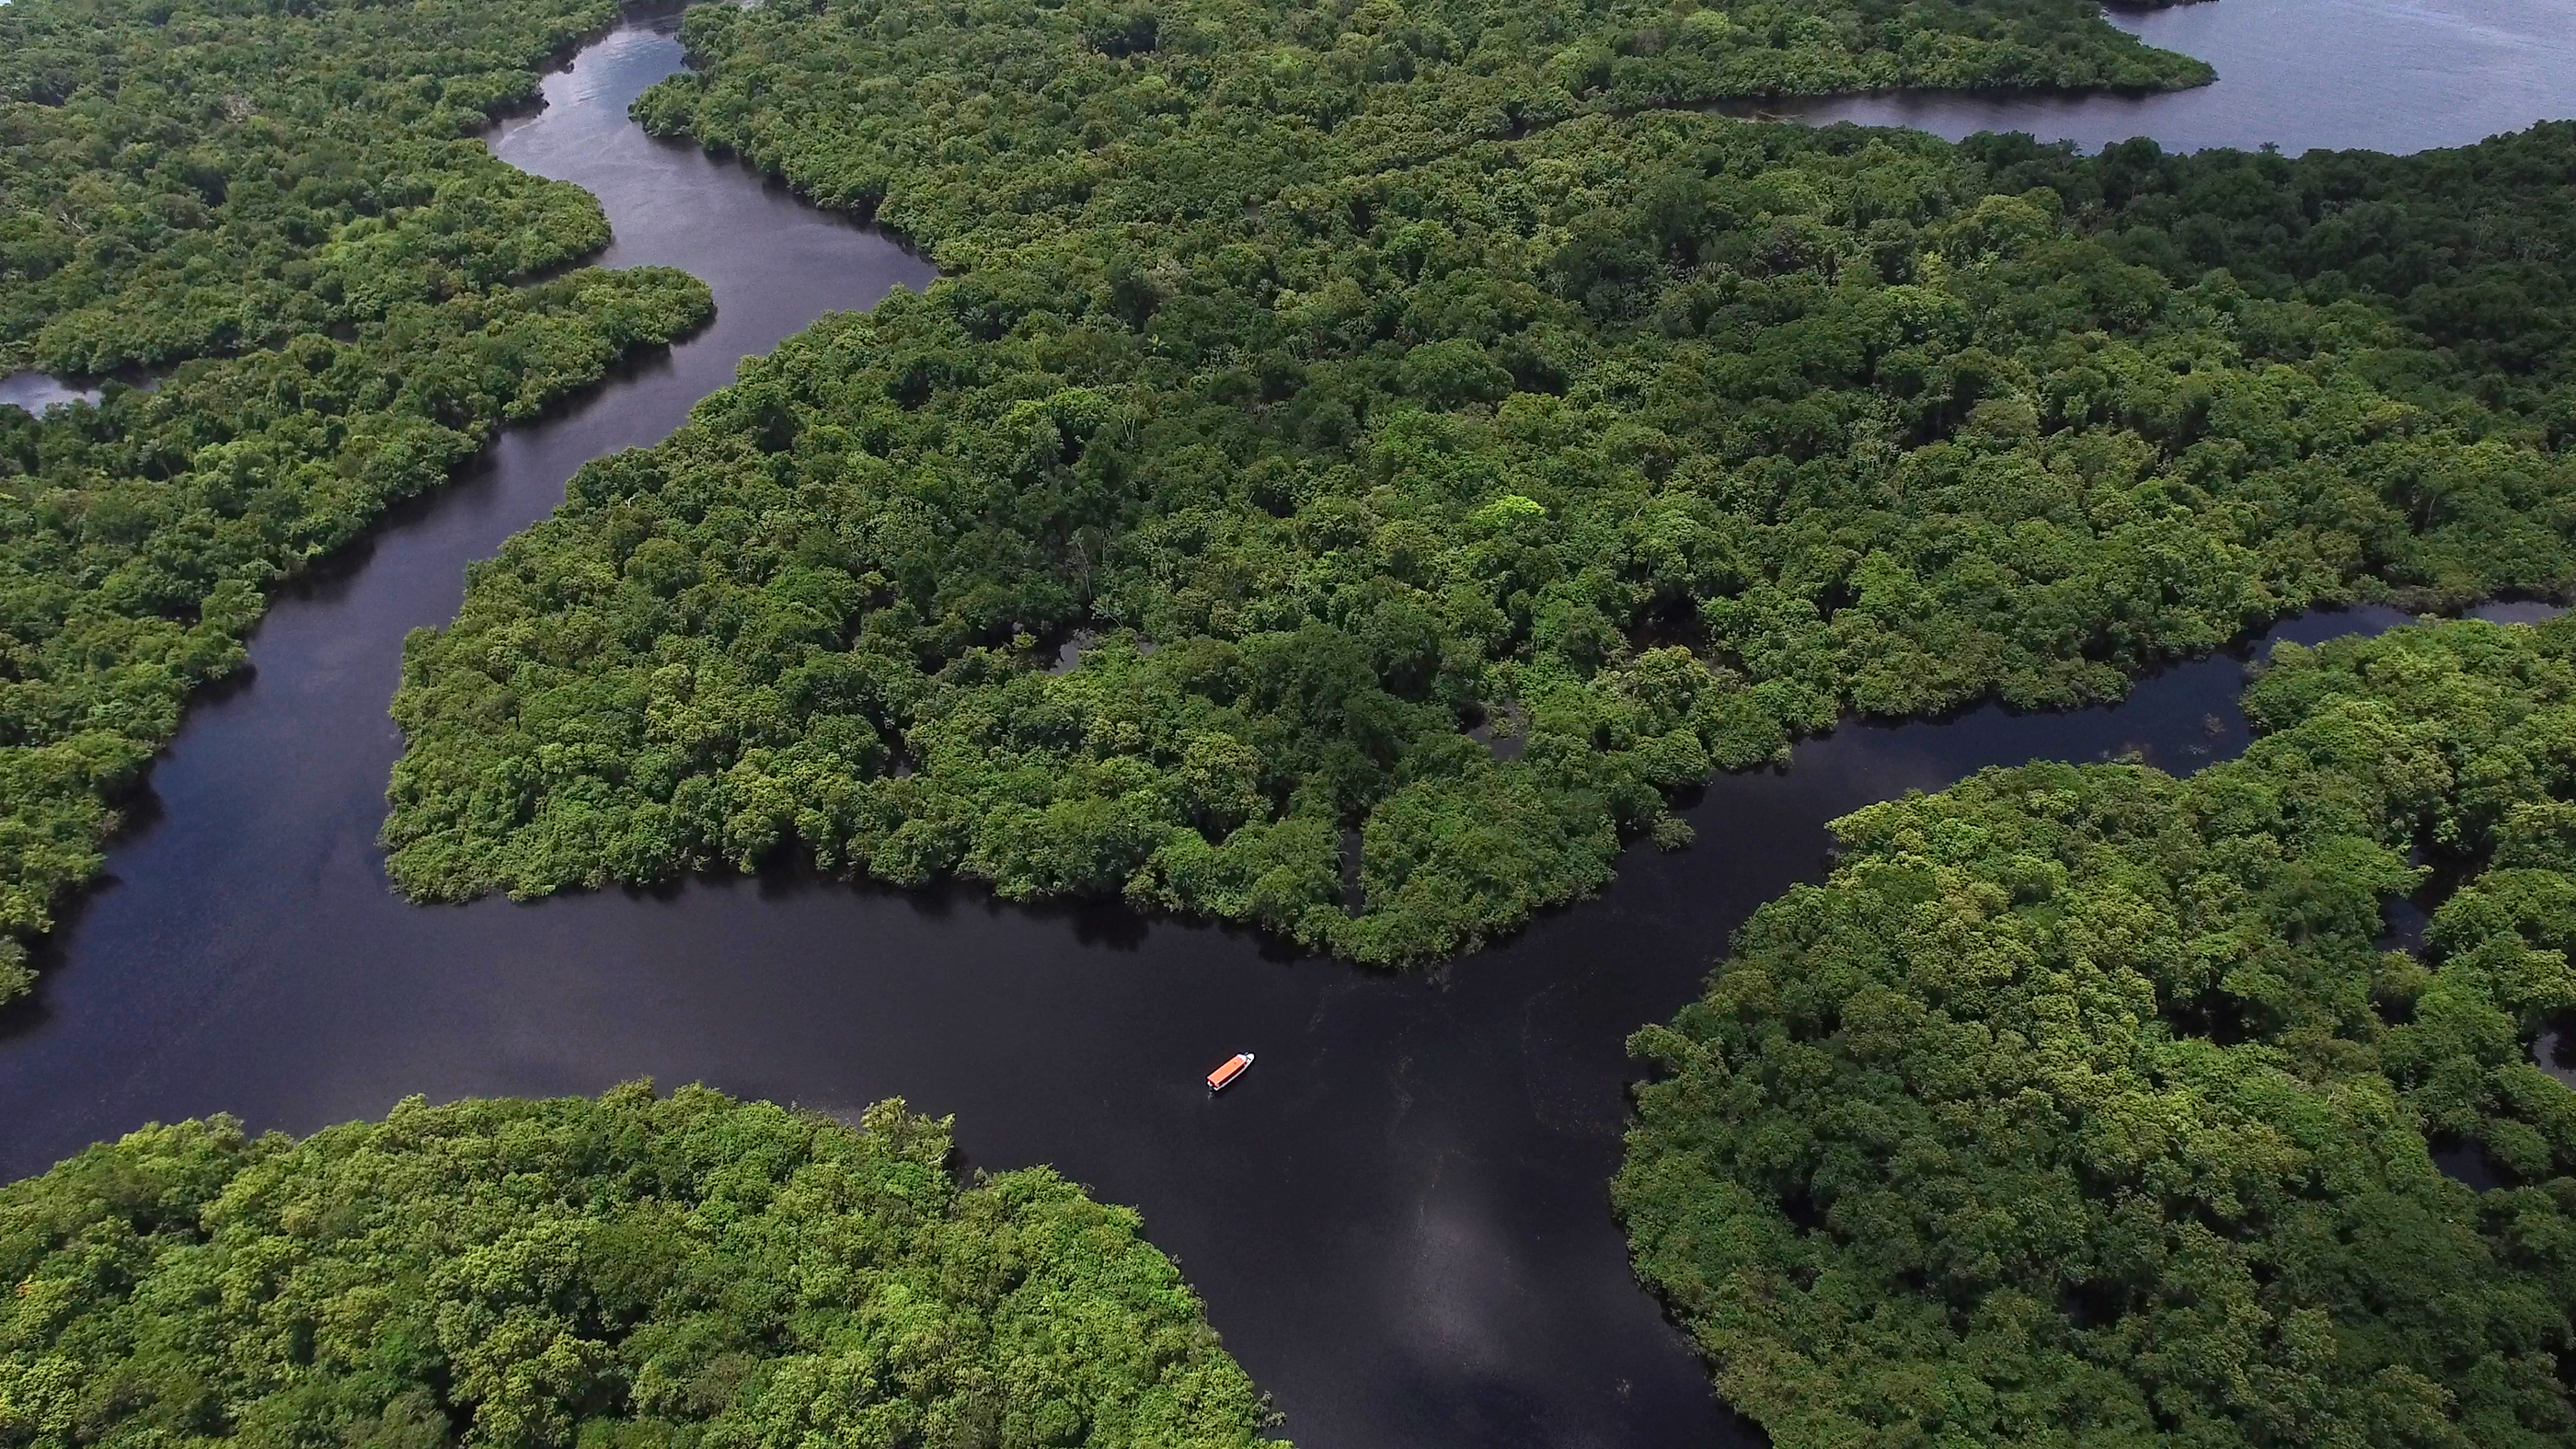 Амазонка полноводна круглый год. Река Амазонка река Амазонка. Бразилия Амазонская низменность. Река Амазонка в Бразилии. Сельва Бразилии.